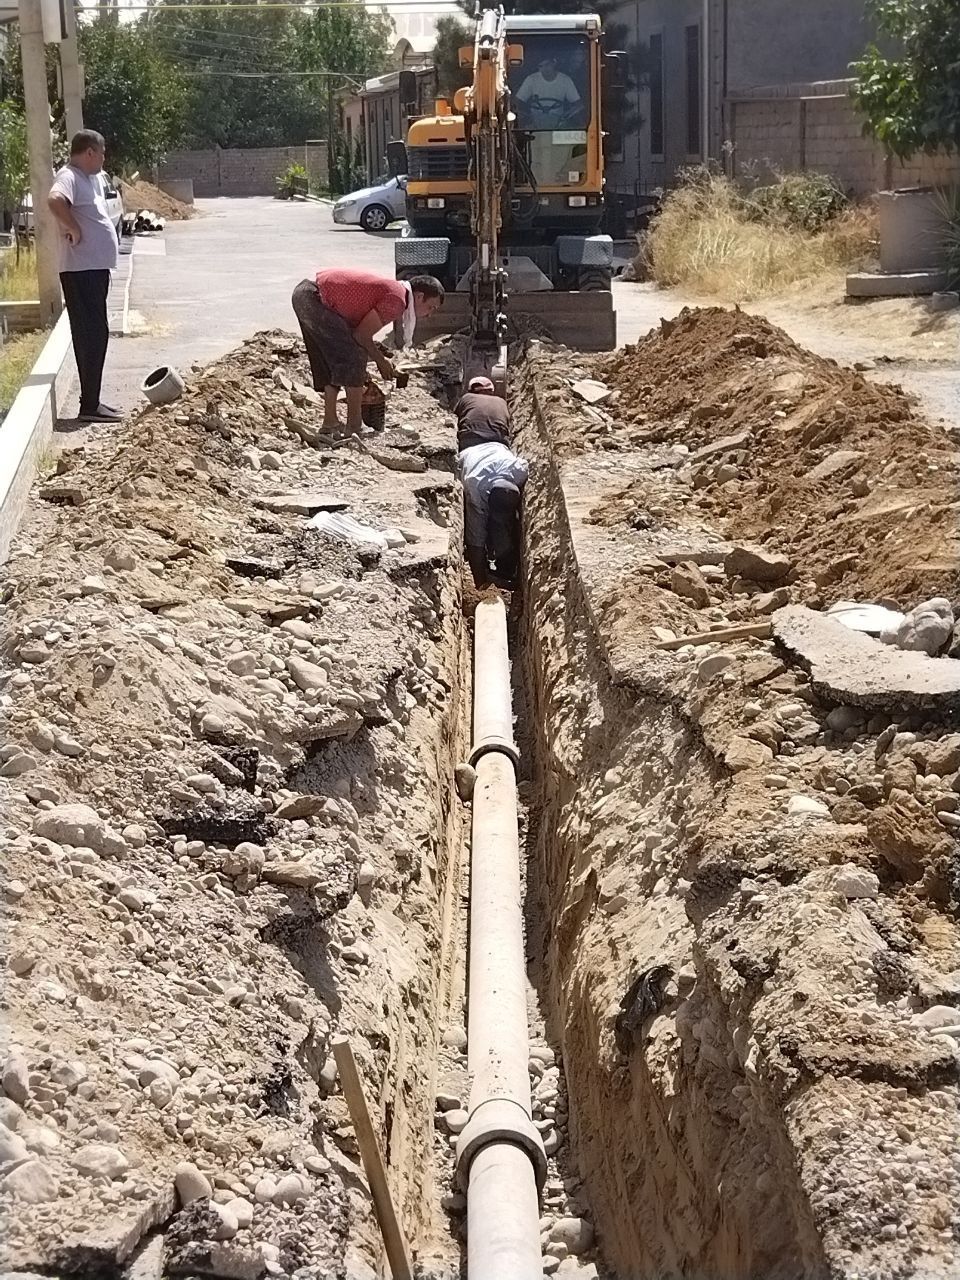 Выгребный яма и септик монтаж канализация и водопровод, траншея,подкоп